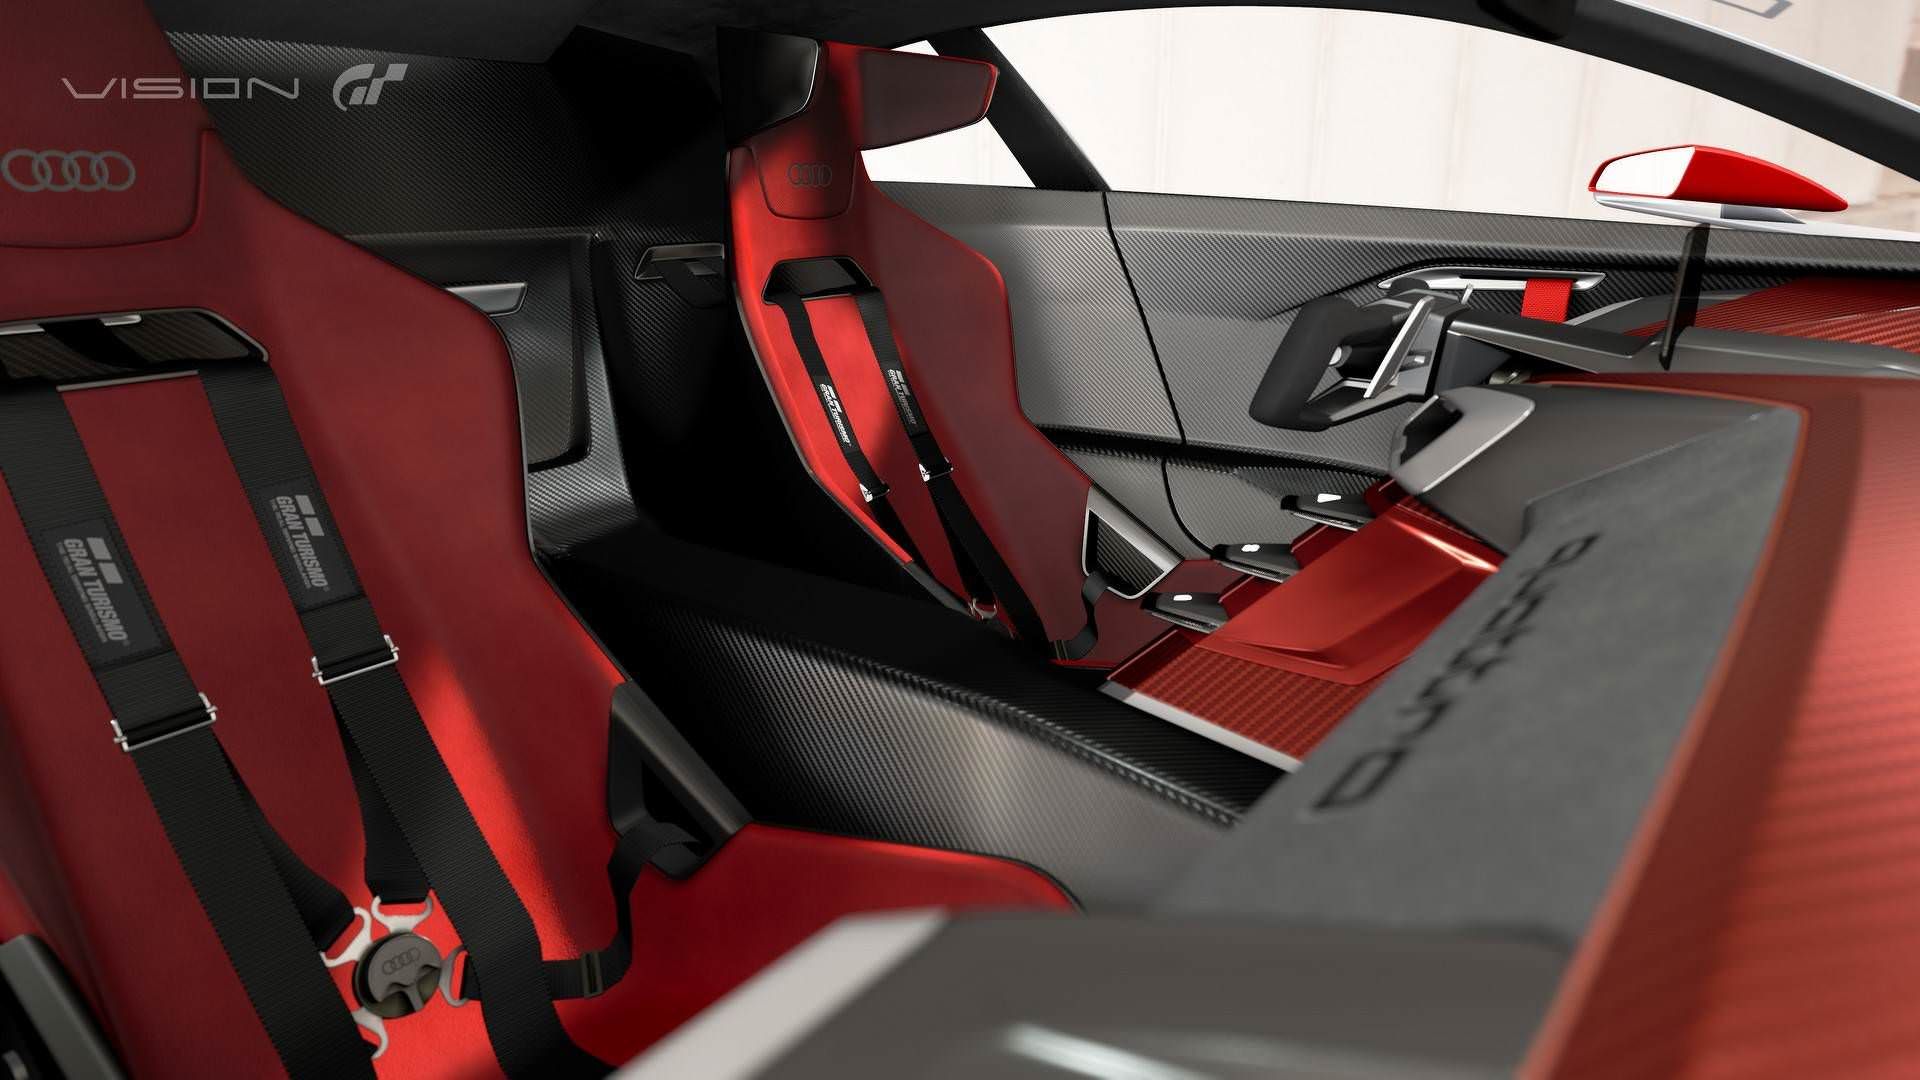 Audi E-Tron Vision Gran Turismo / آئودی ویژن گرن توریزمو